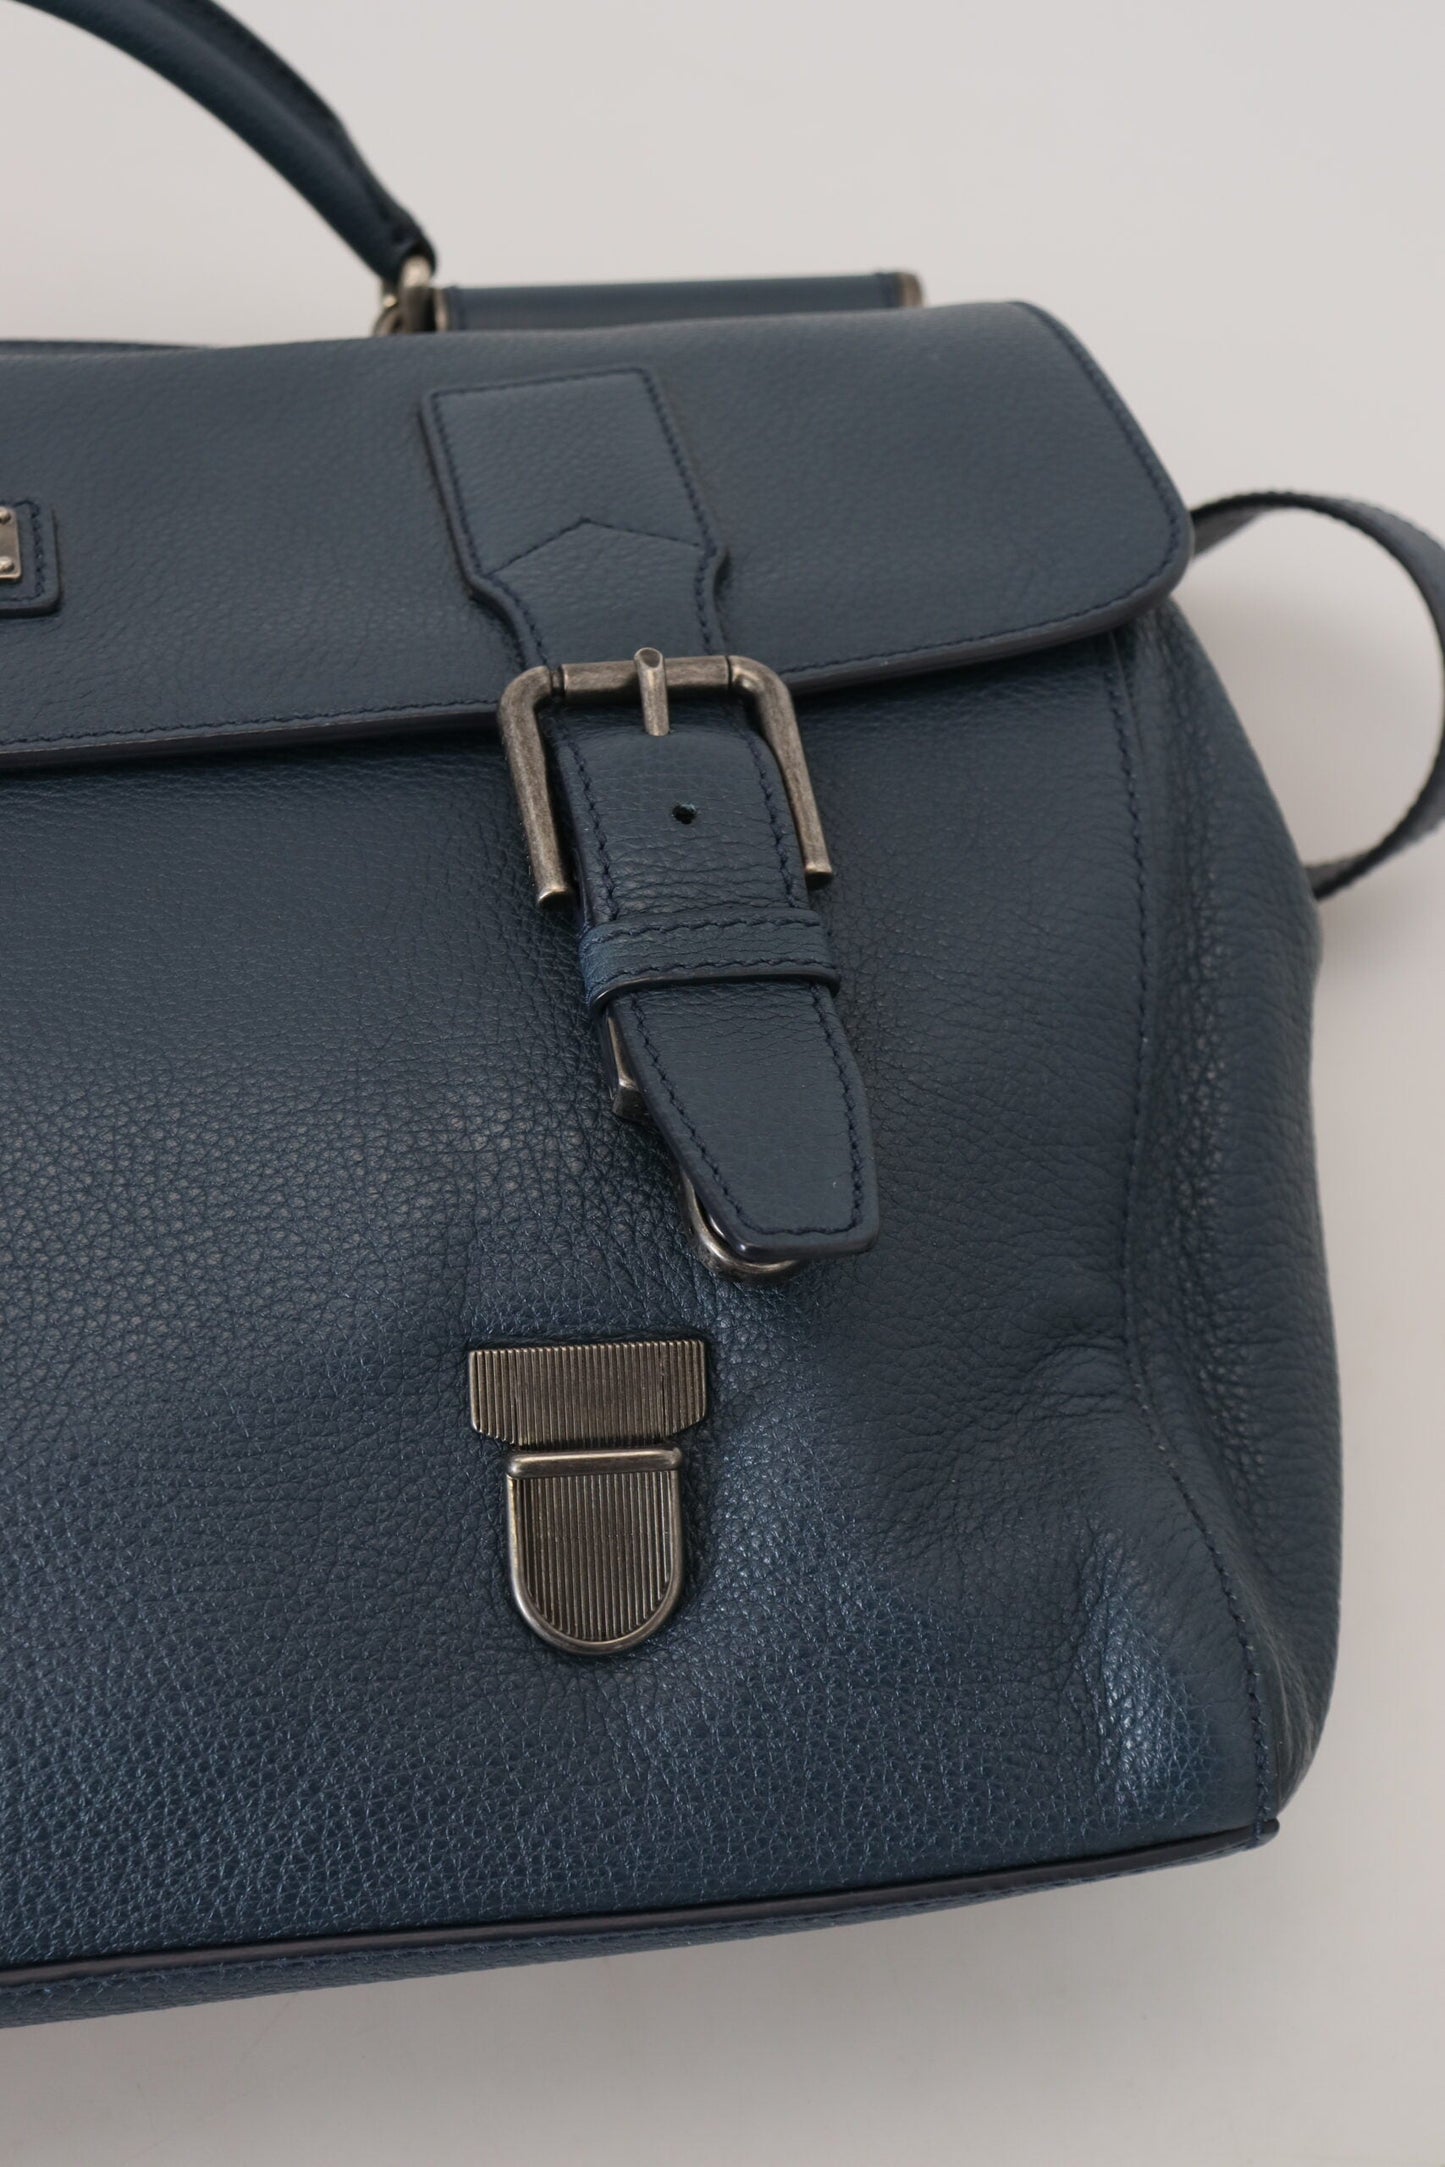 Dolce & Gabbana Blue Leather Logo Plaque Men Travel Work Bag